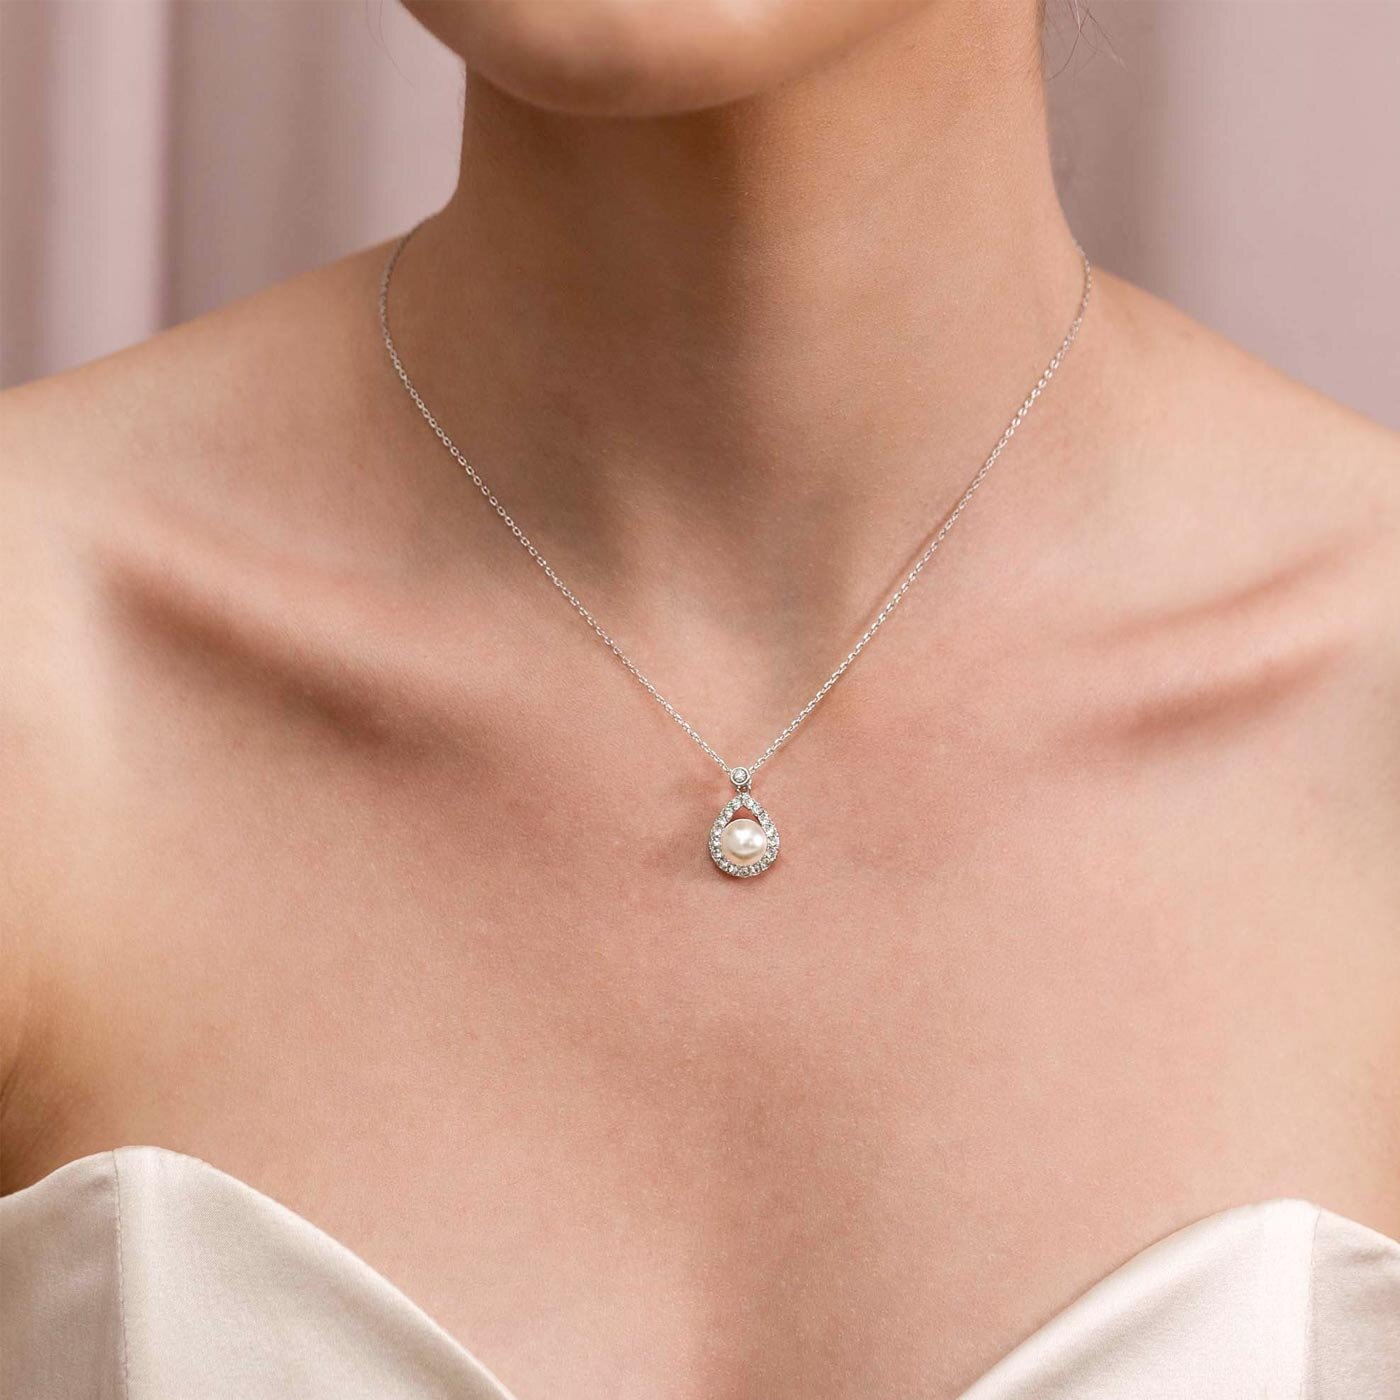 Emmylou necklace - Ivory (Silver)